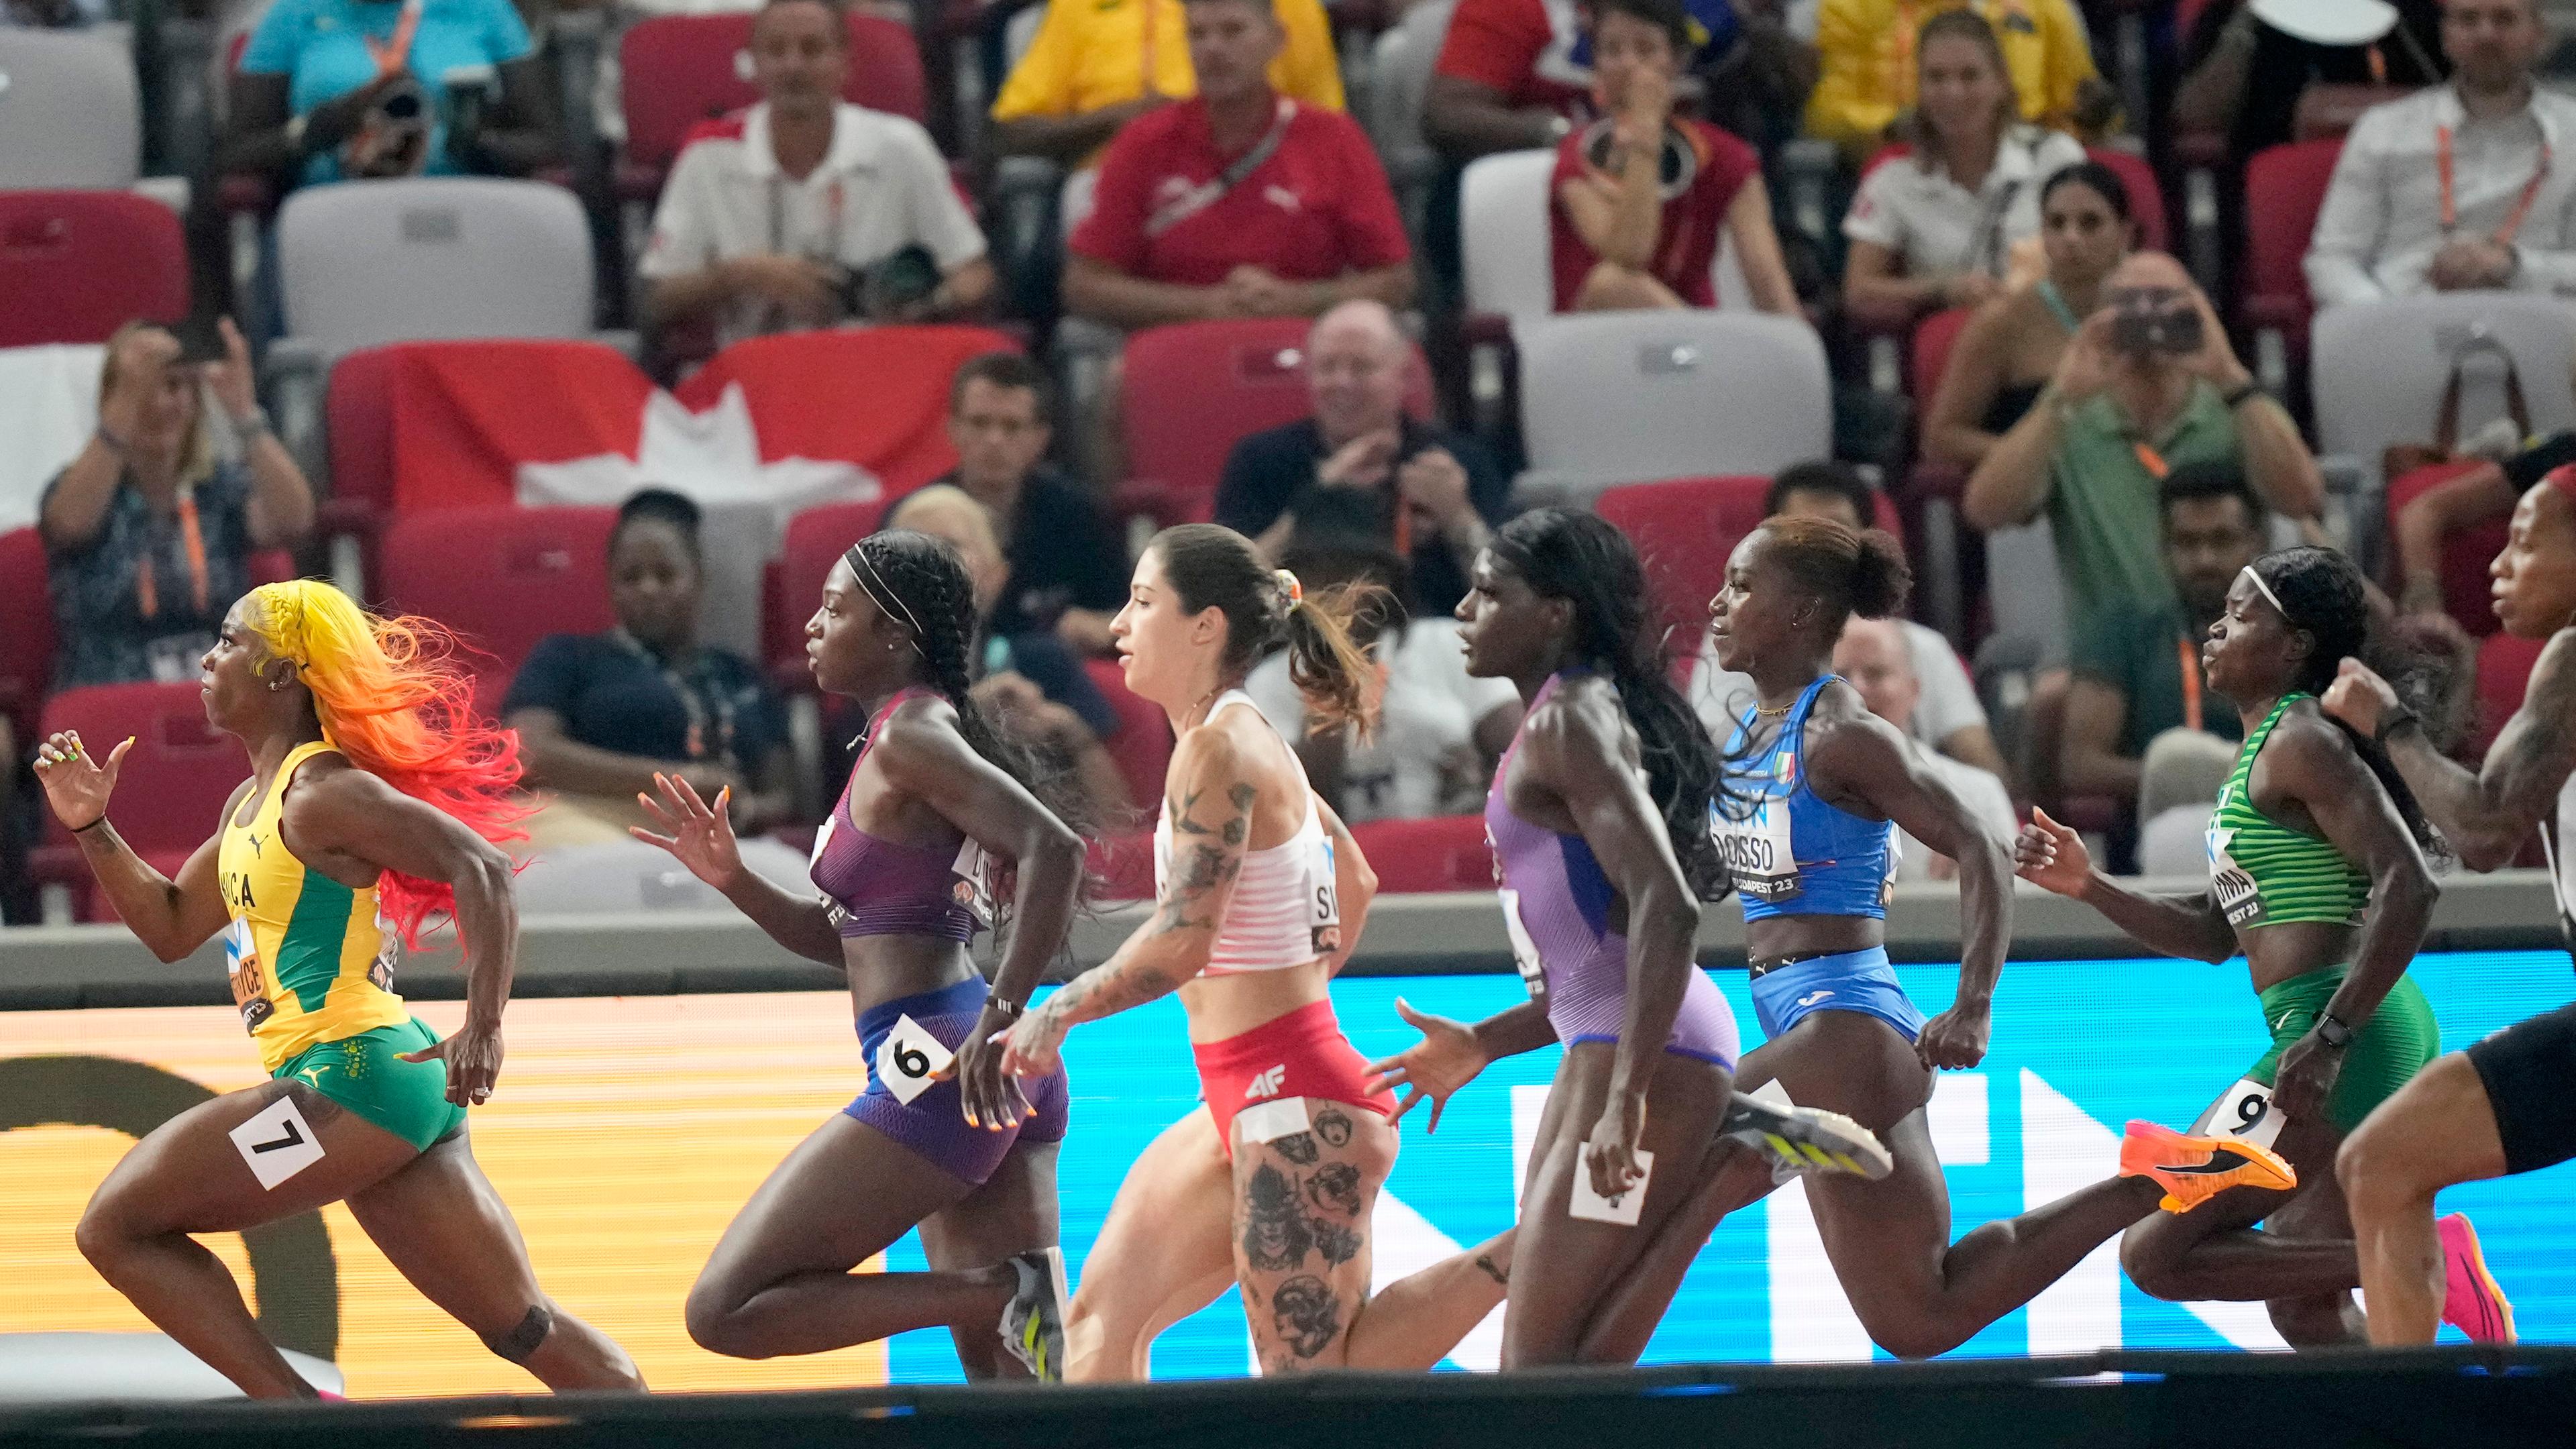 Leichtathletik: Shelly-Ann Fraser-Pryce bei der WM in Budapest in Führung im 100m-Rennen.